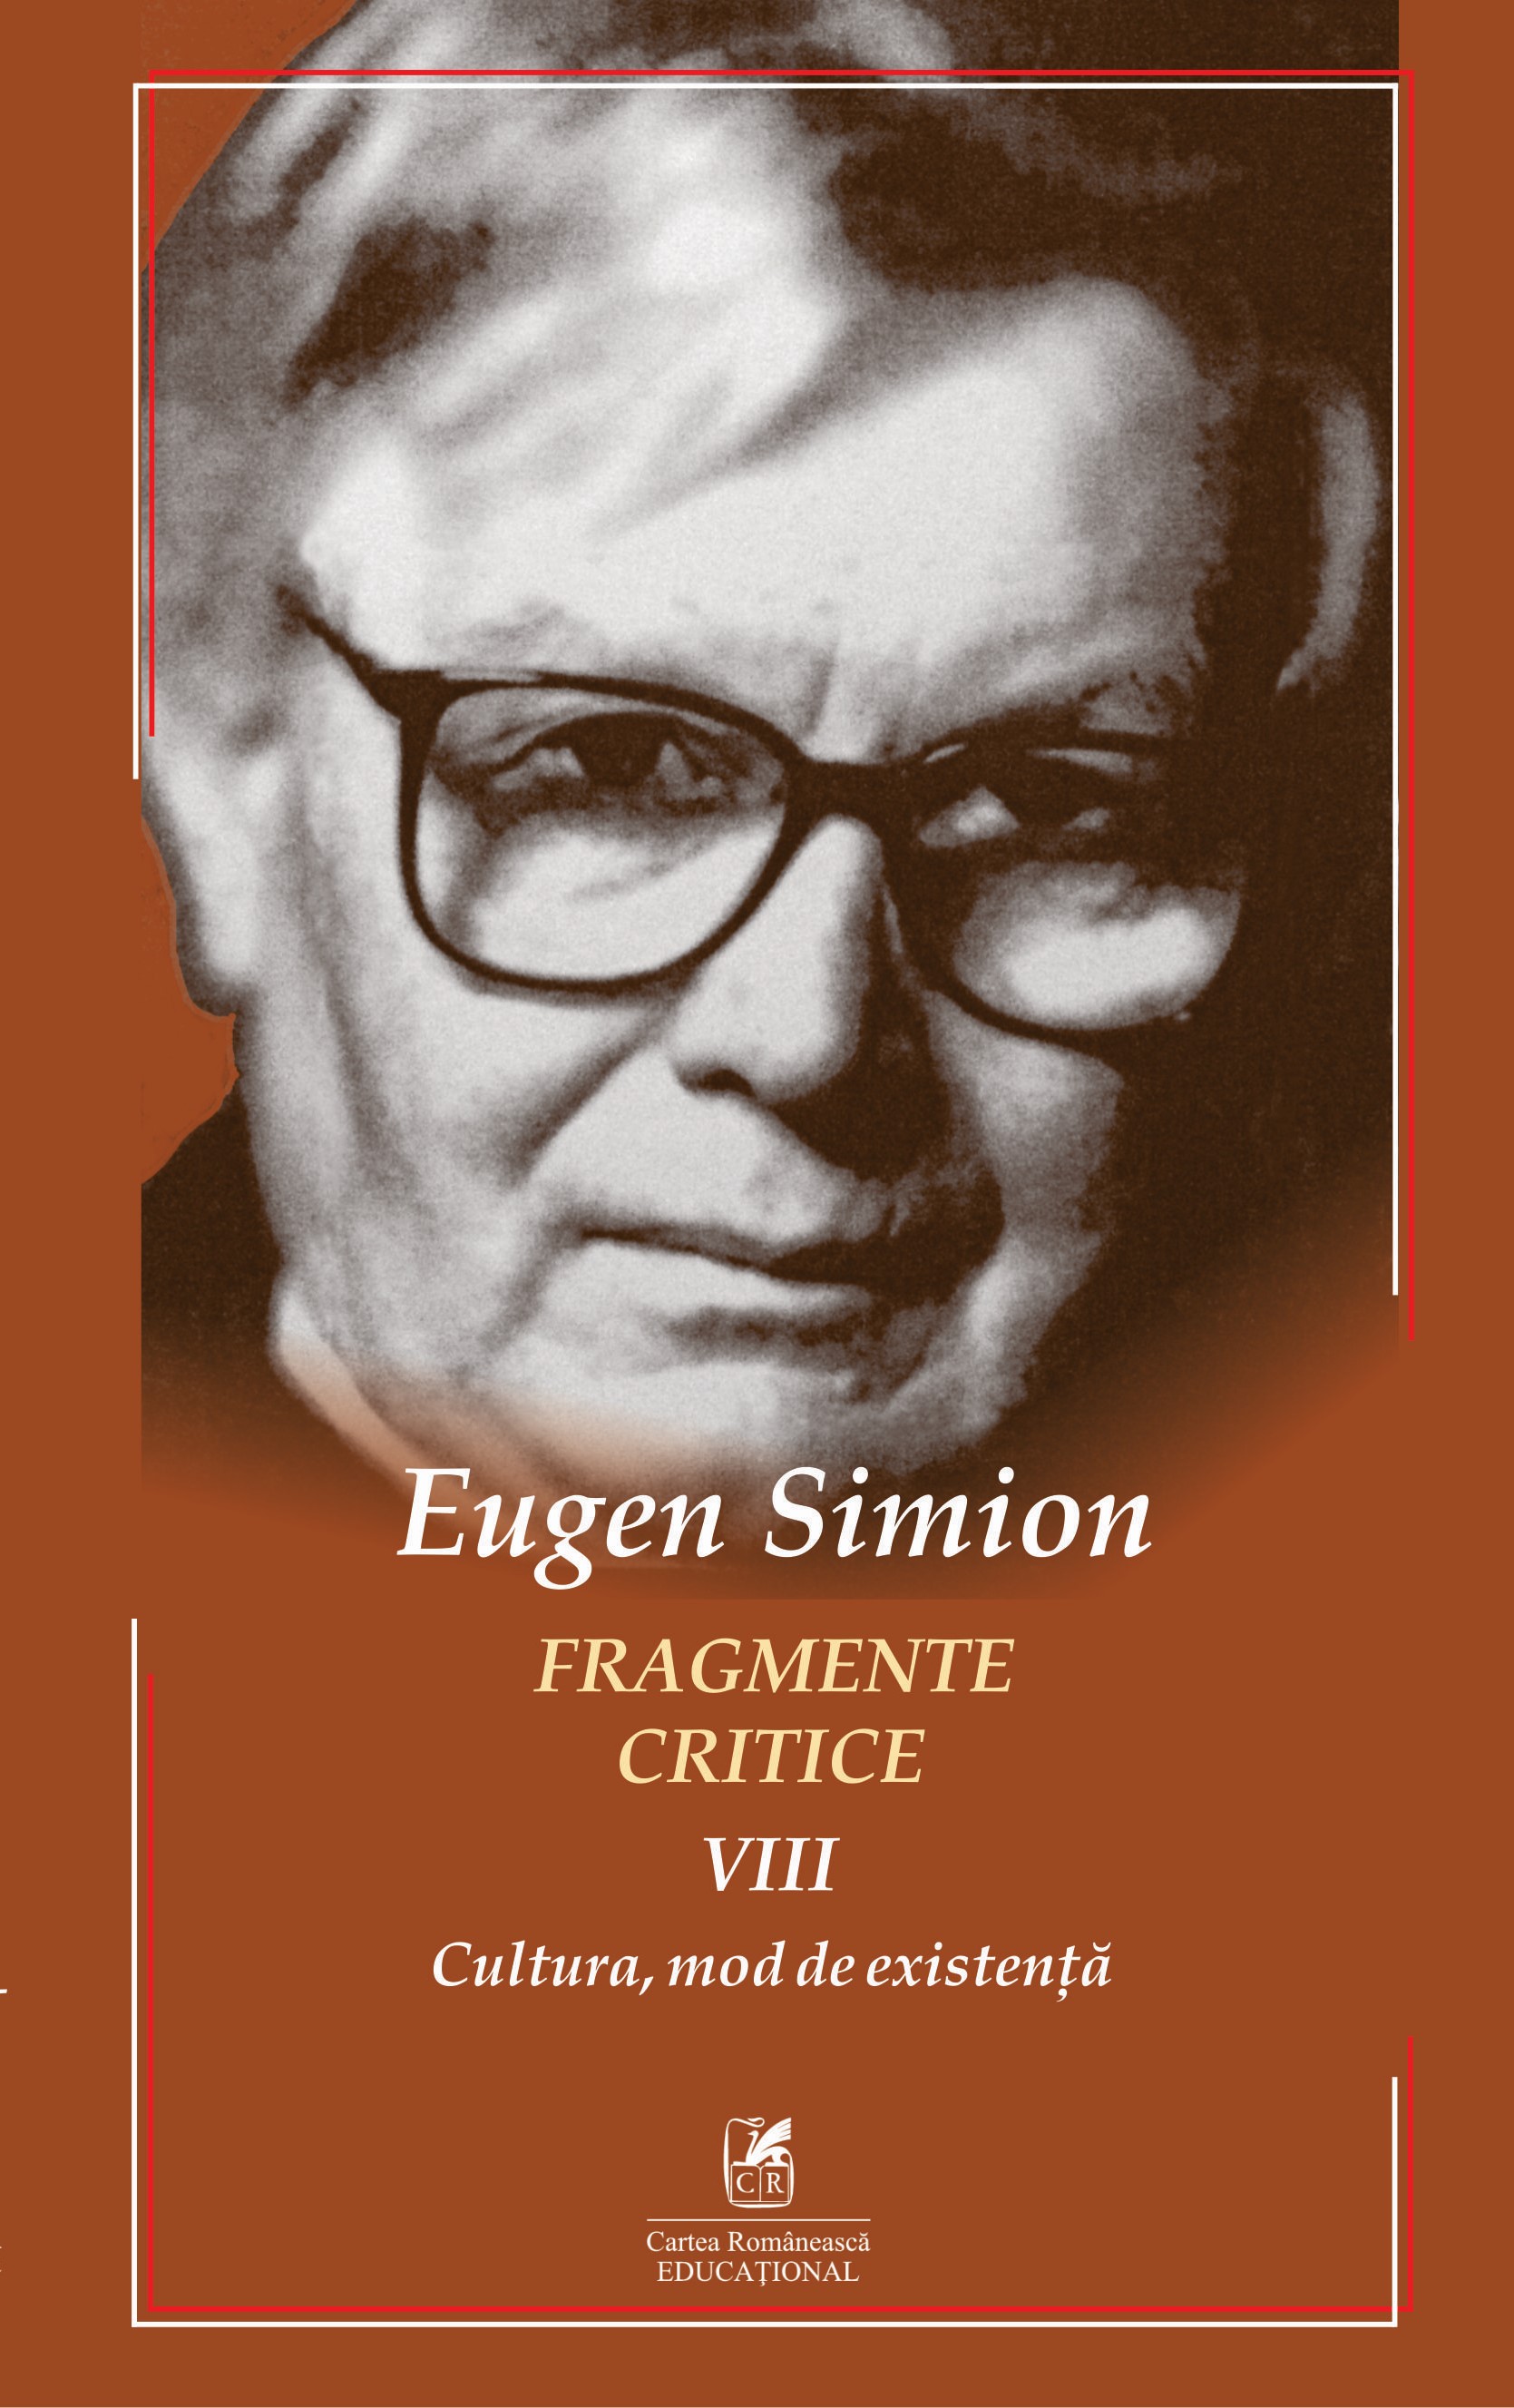 Fragmente critice, volumul VIII: Cultura, mod de existenta | Eugen Simion Cartea Romaneasca educational